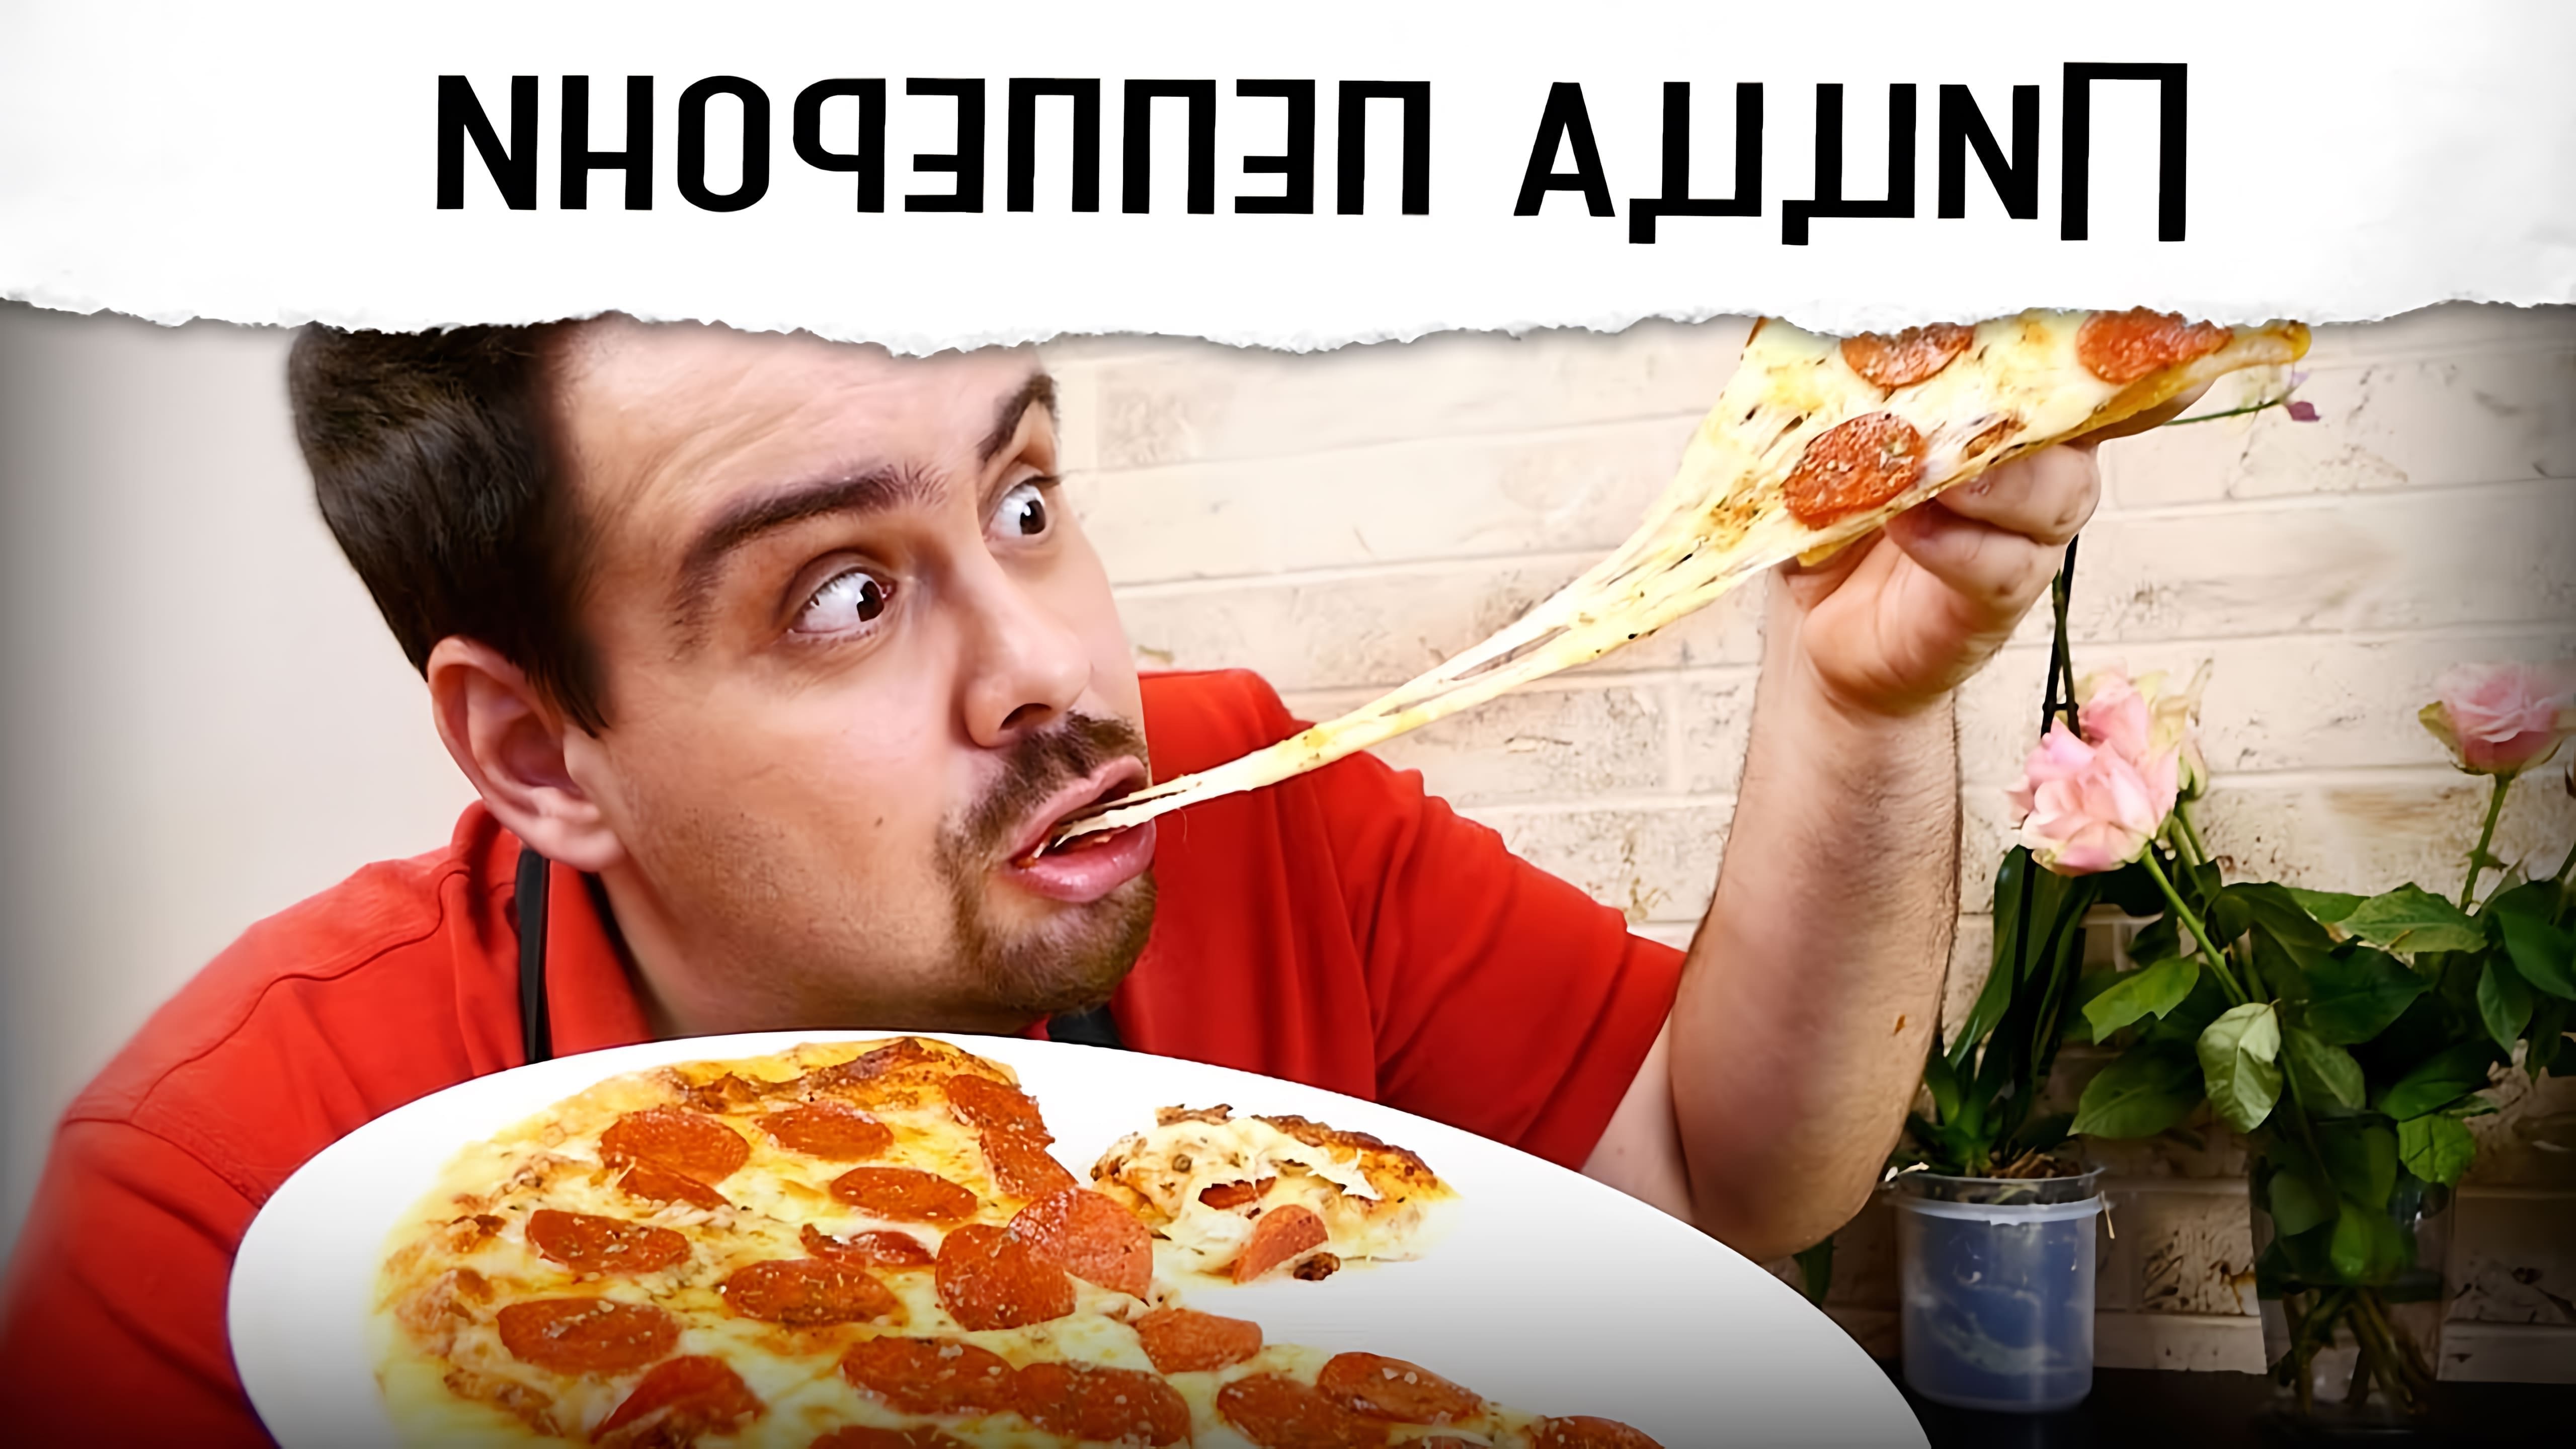 В этом видео показан рецепт приготовления пиццы пеперони